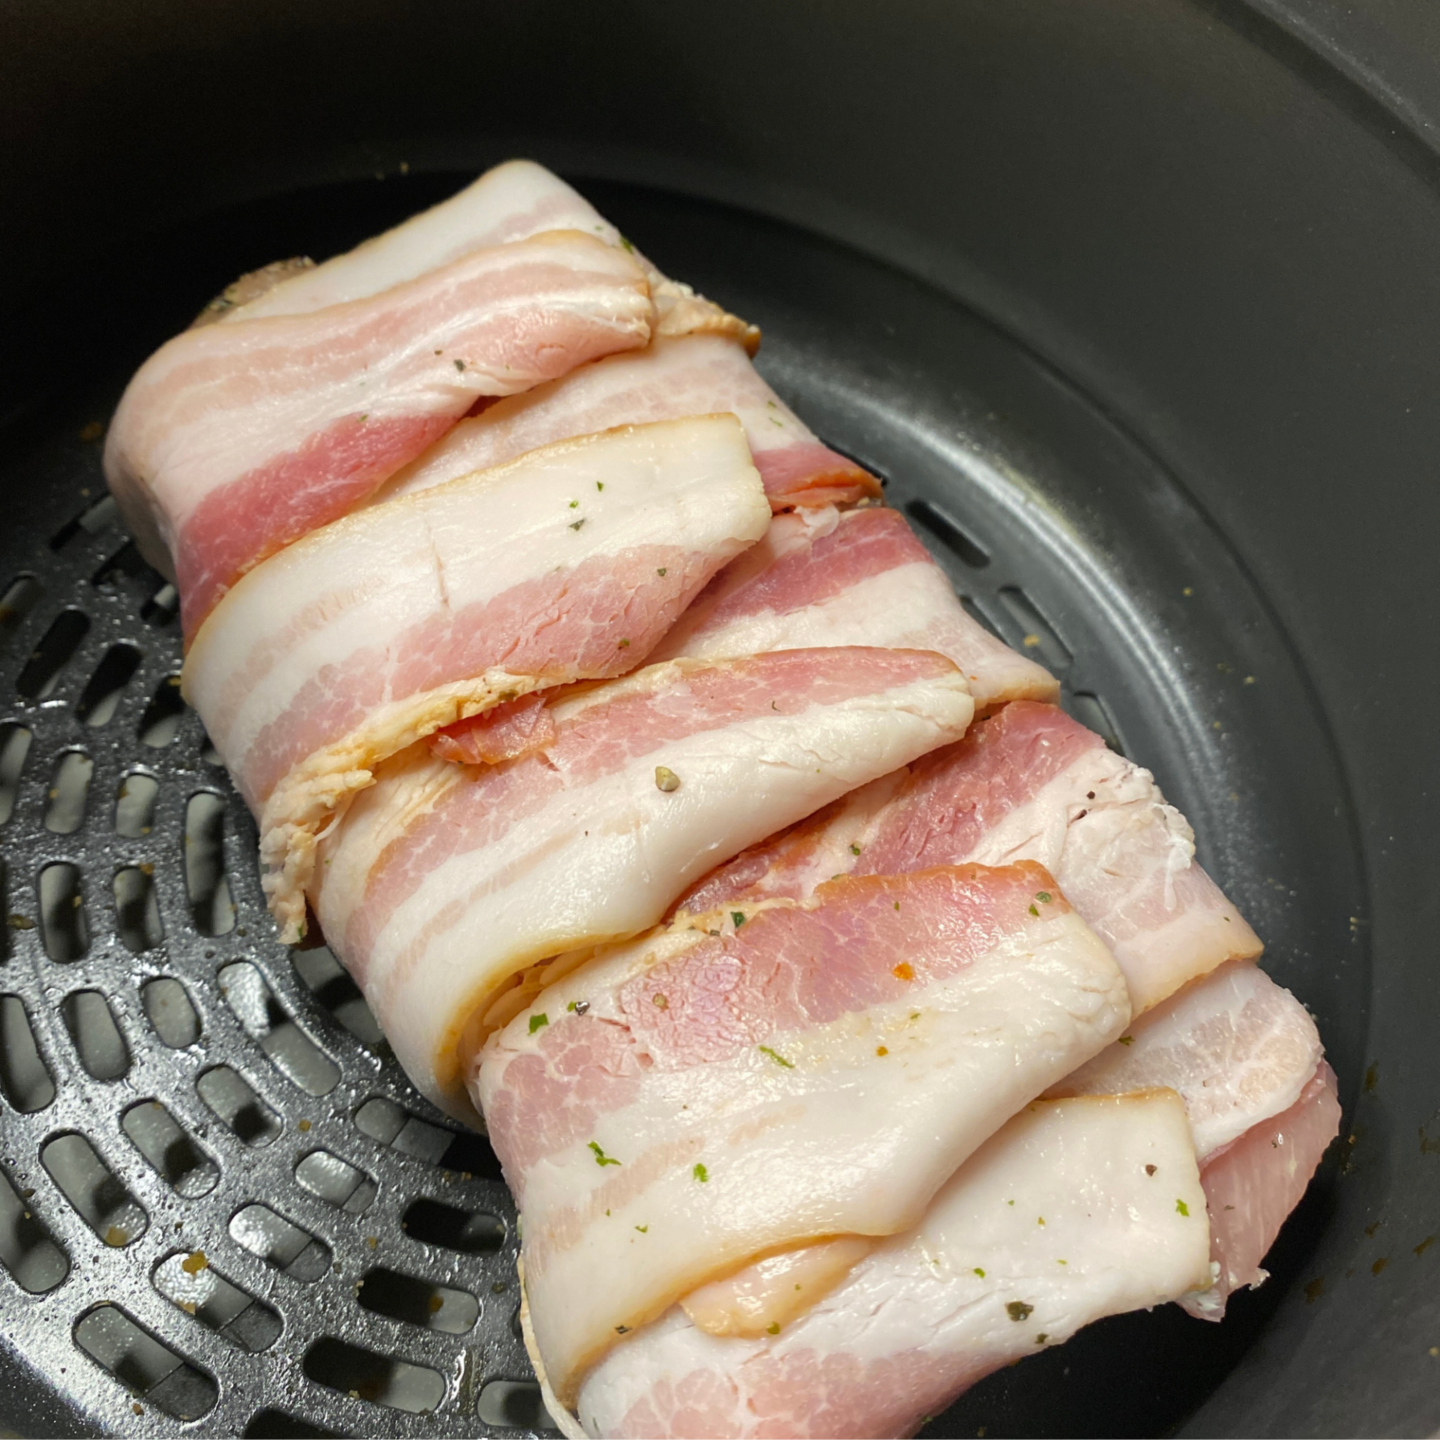 bacon wrapped tenderloin in air fryer